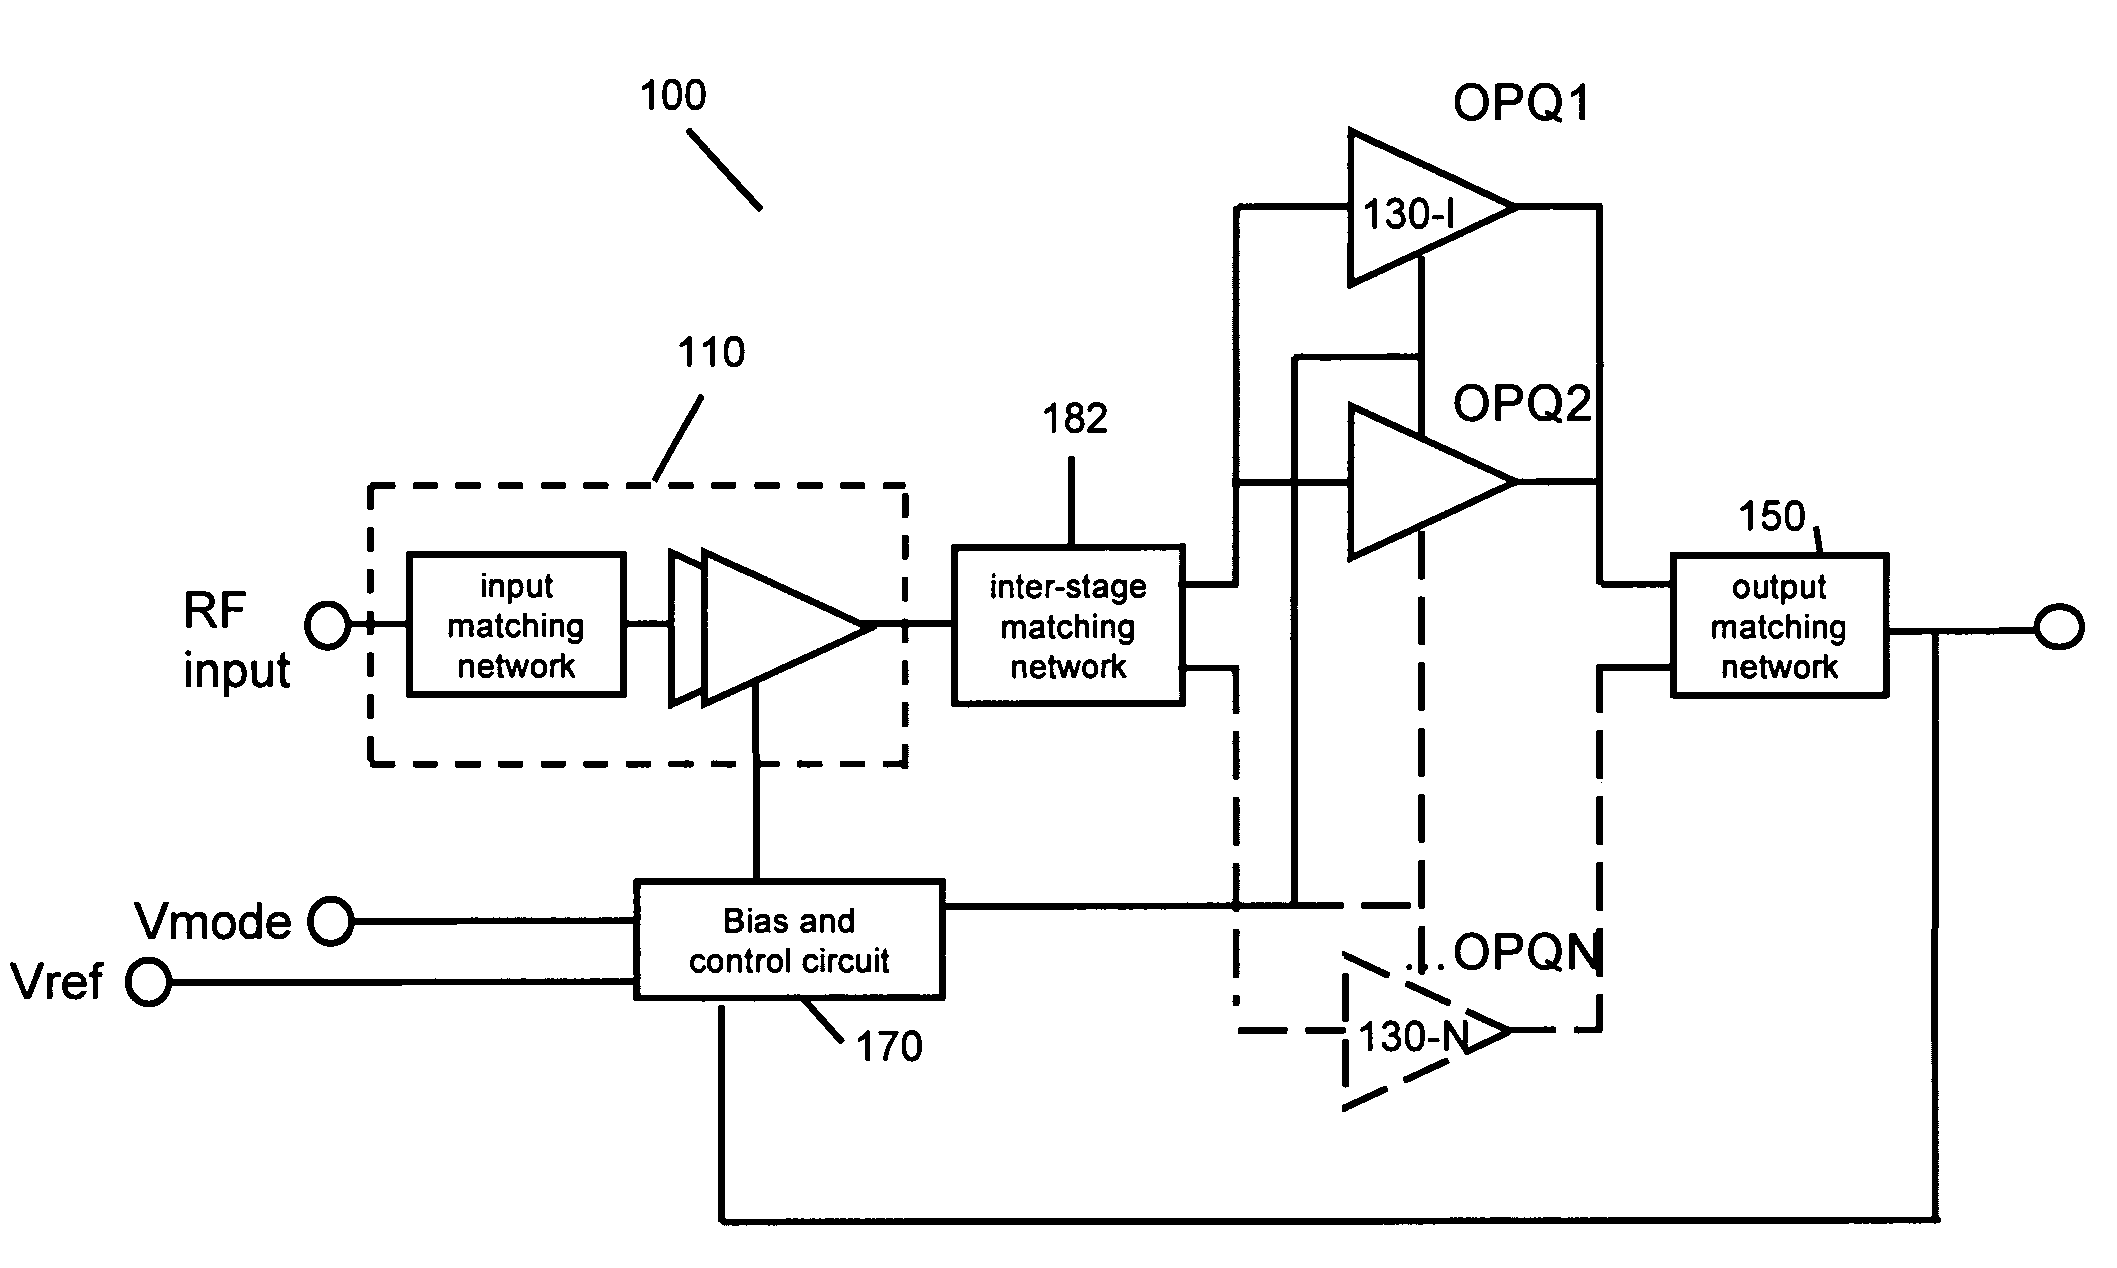 Multi-mode power amplifier